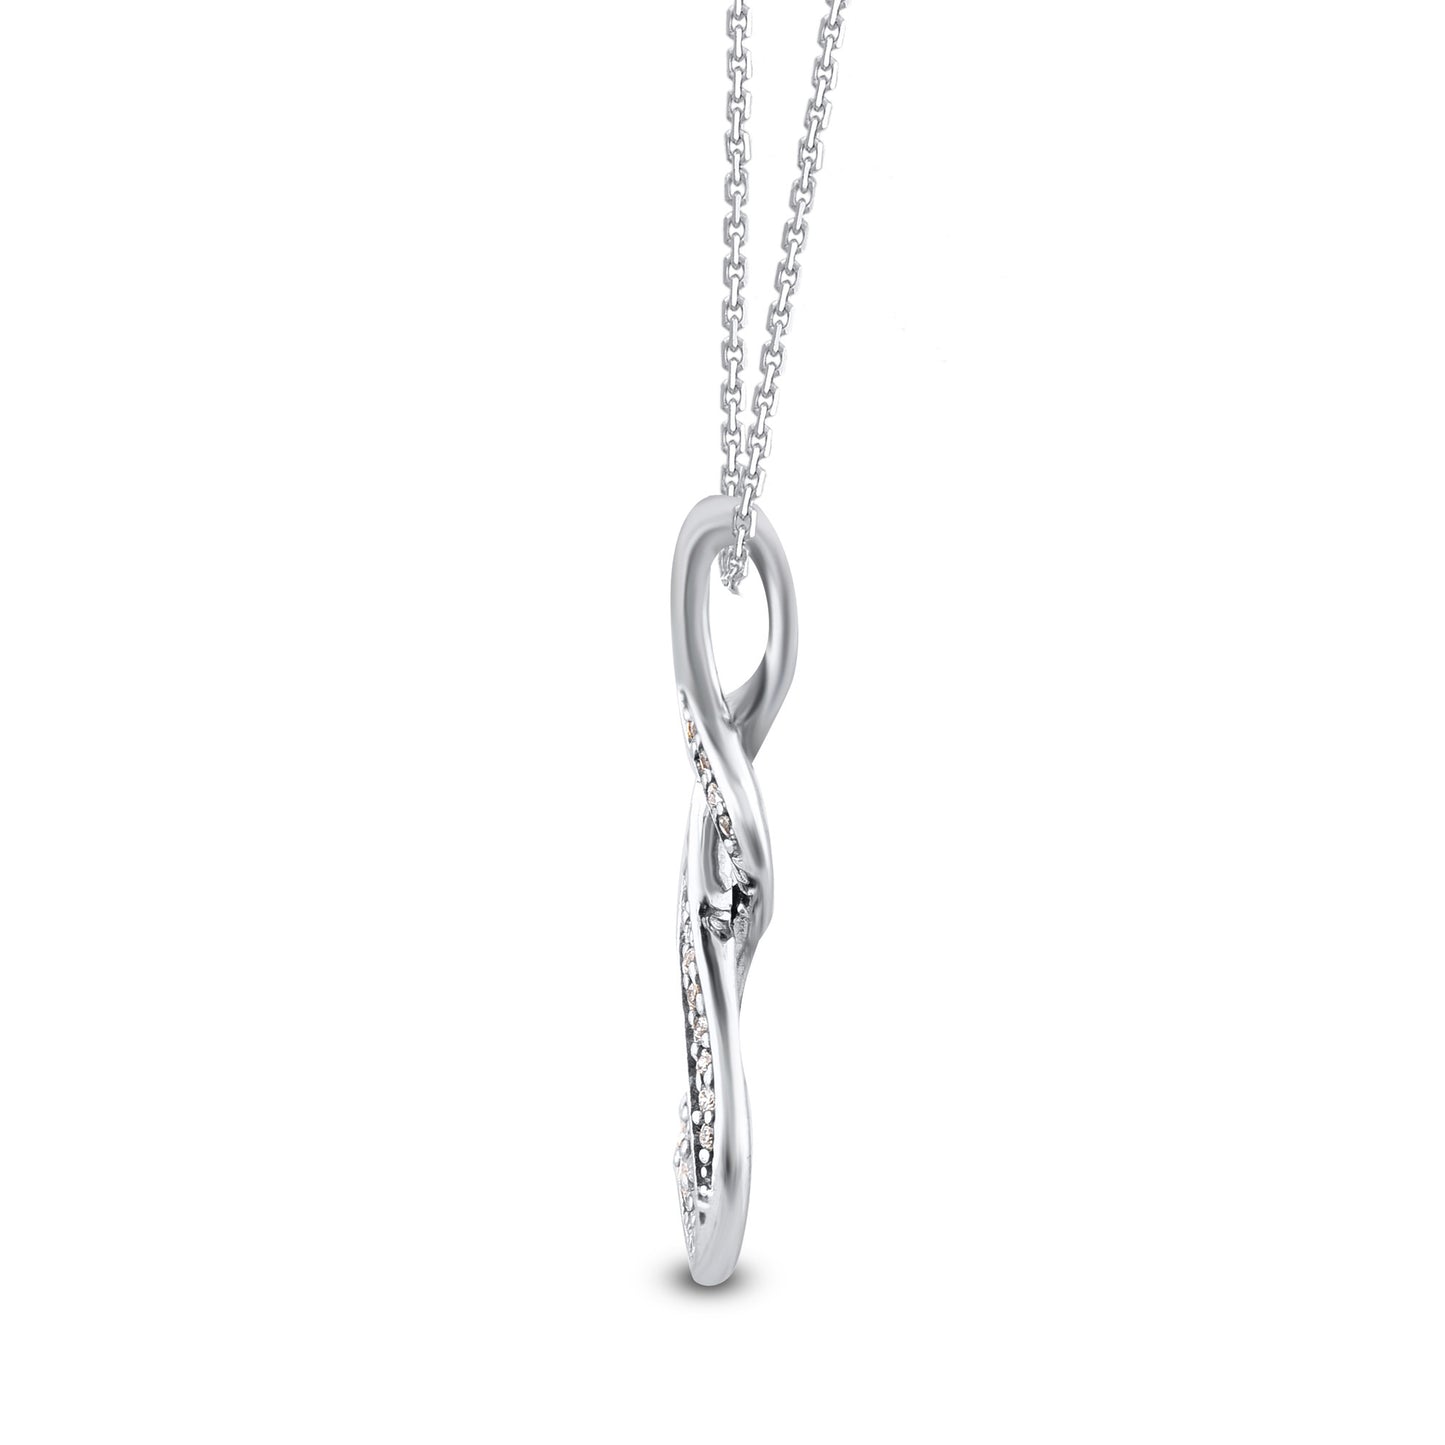 Swirl Infinity Pendant in 925 Sterling Silver